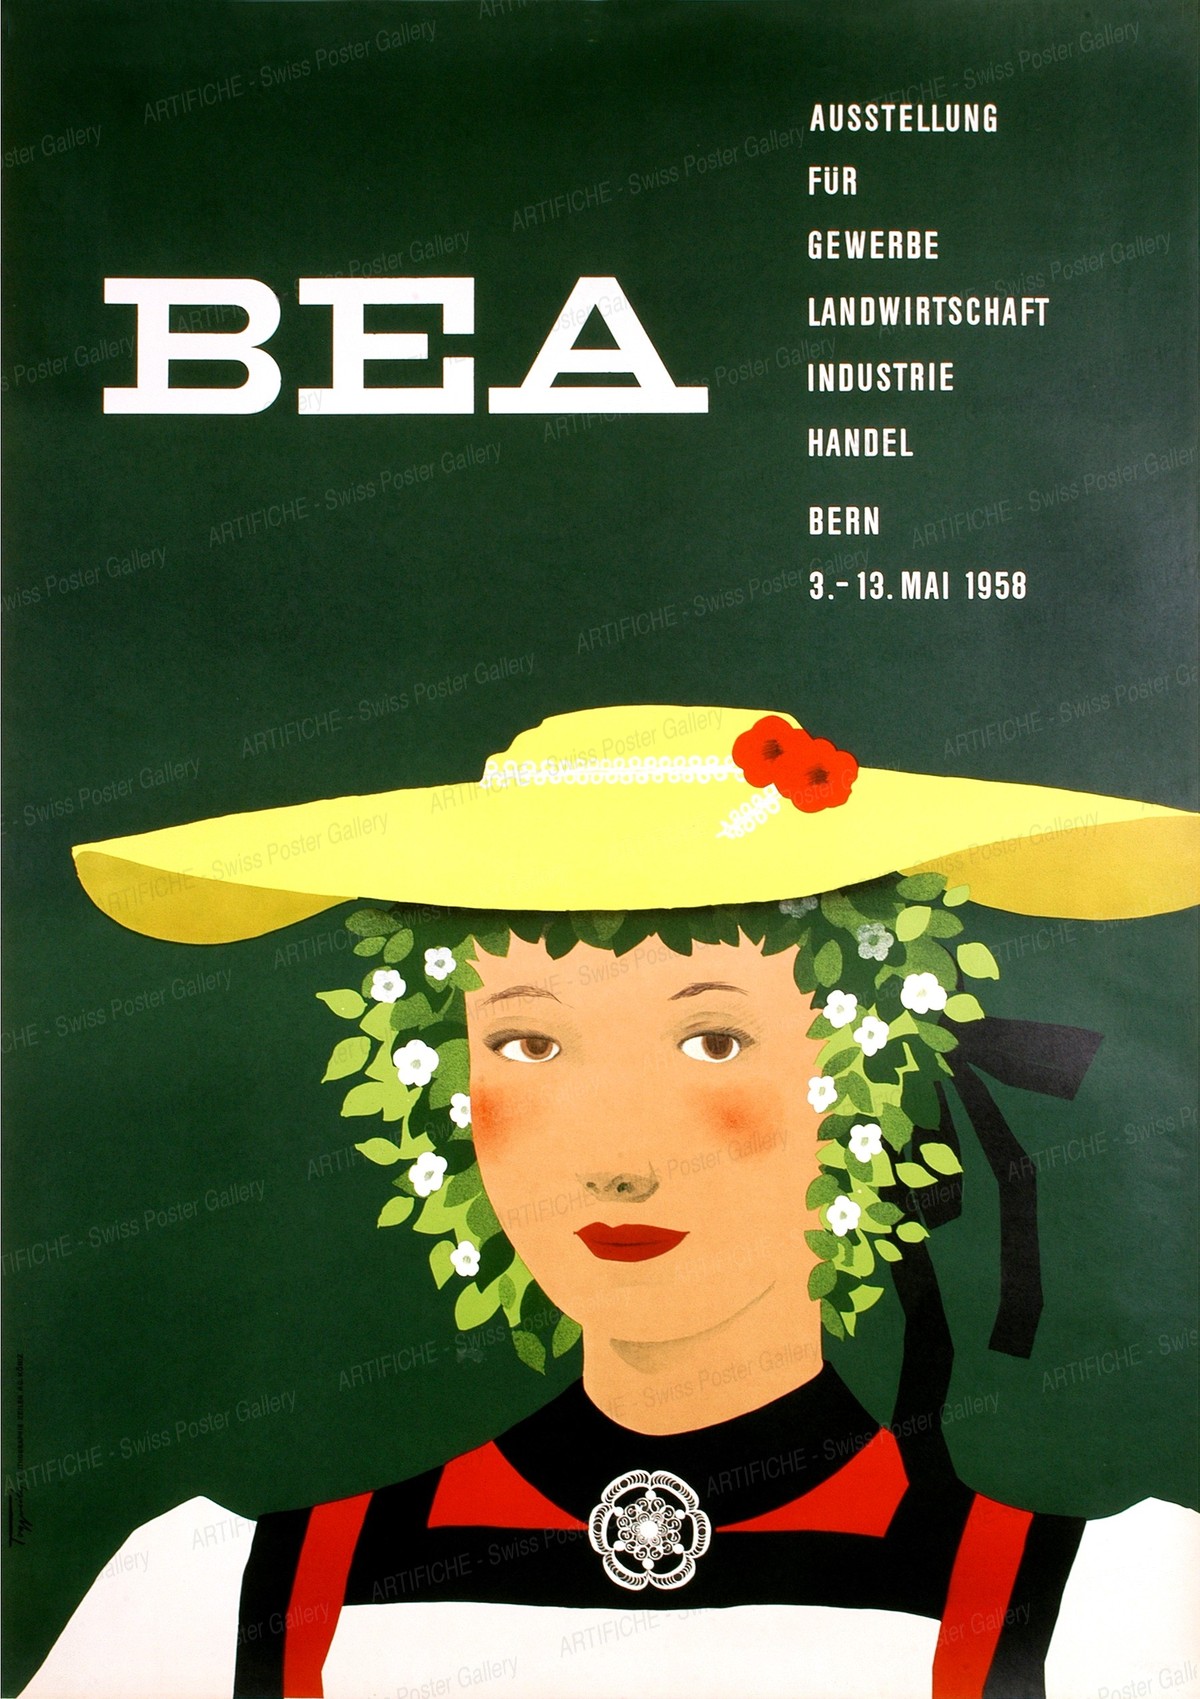 BEA – Ausstellung für Gewerbe, Landwirtschaft, Industrie, Handel Bern 1958, Karl Toggweiler